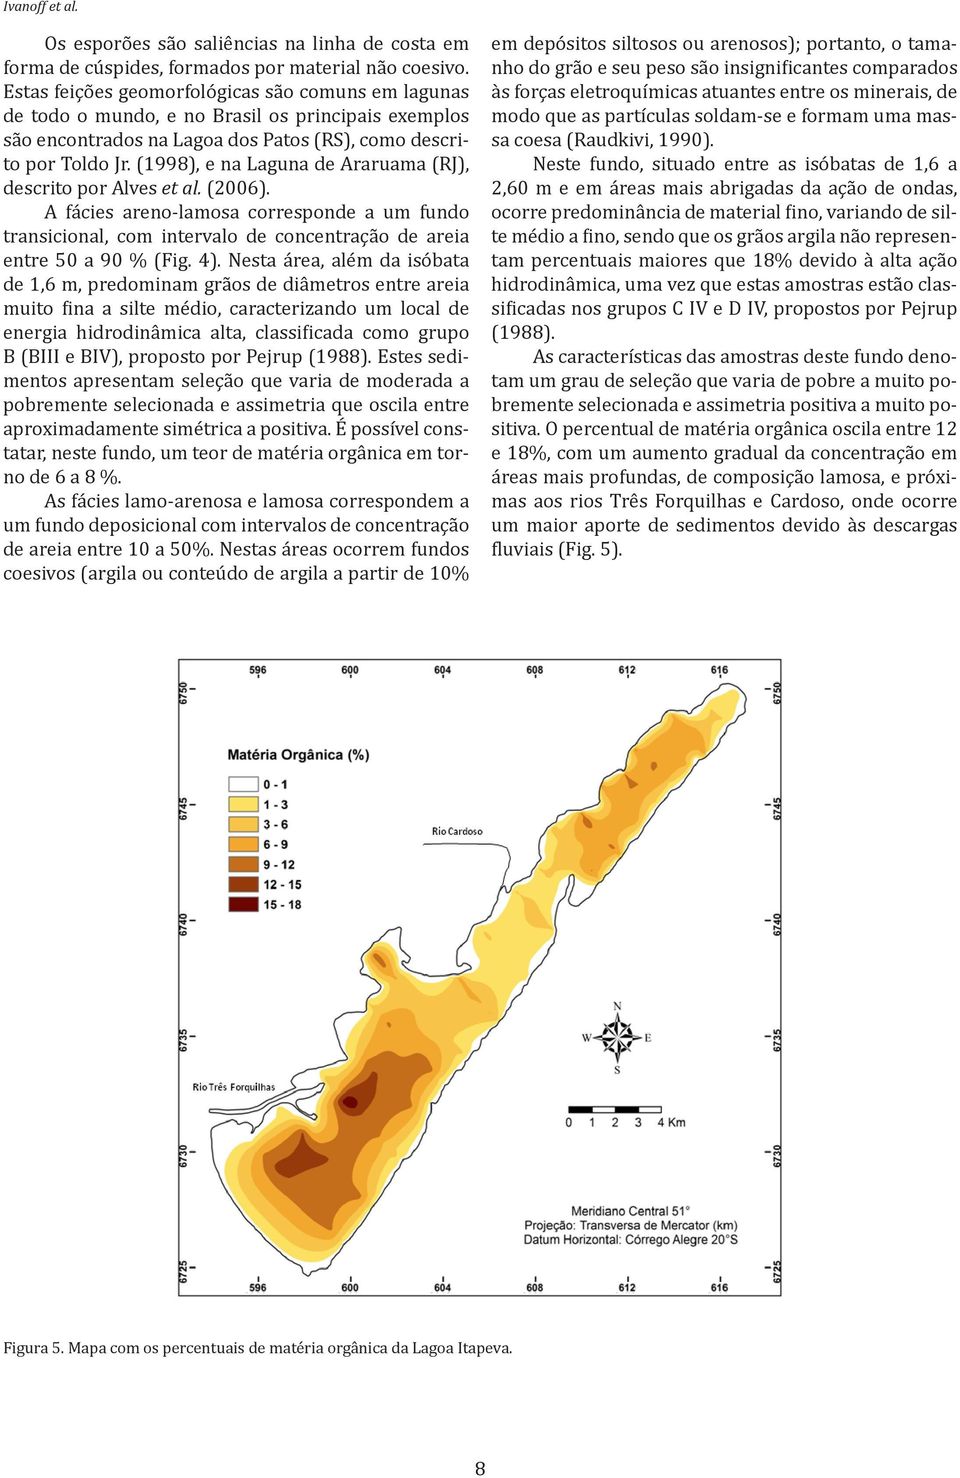 (1998), e na Laguna de Araruama (RJ), descrito por Alves et al. (2006). A fácies areno-lamosa corresponde a um fundo transicional, com intervalo de concentração de areia entre 50 a 90 % (Fig. 4).